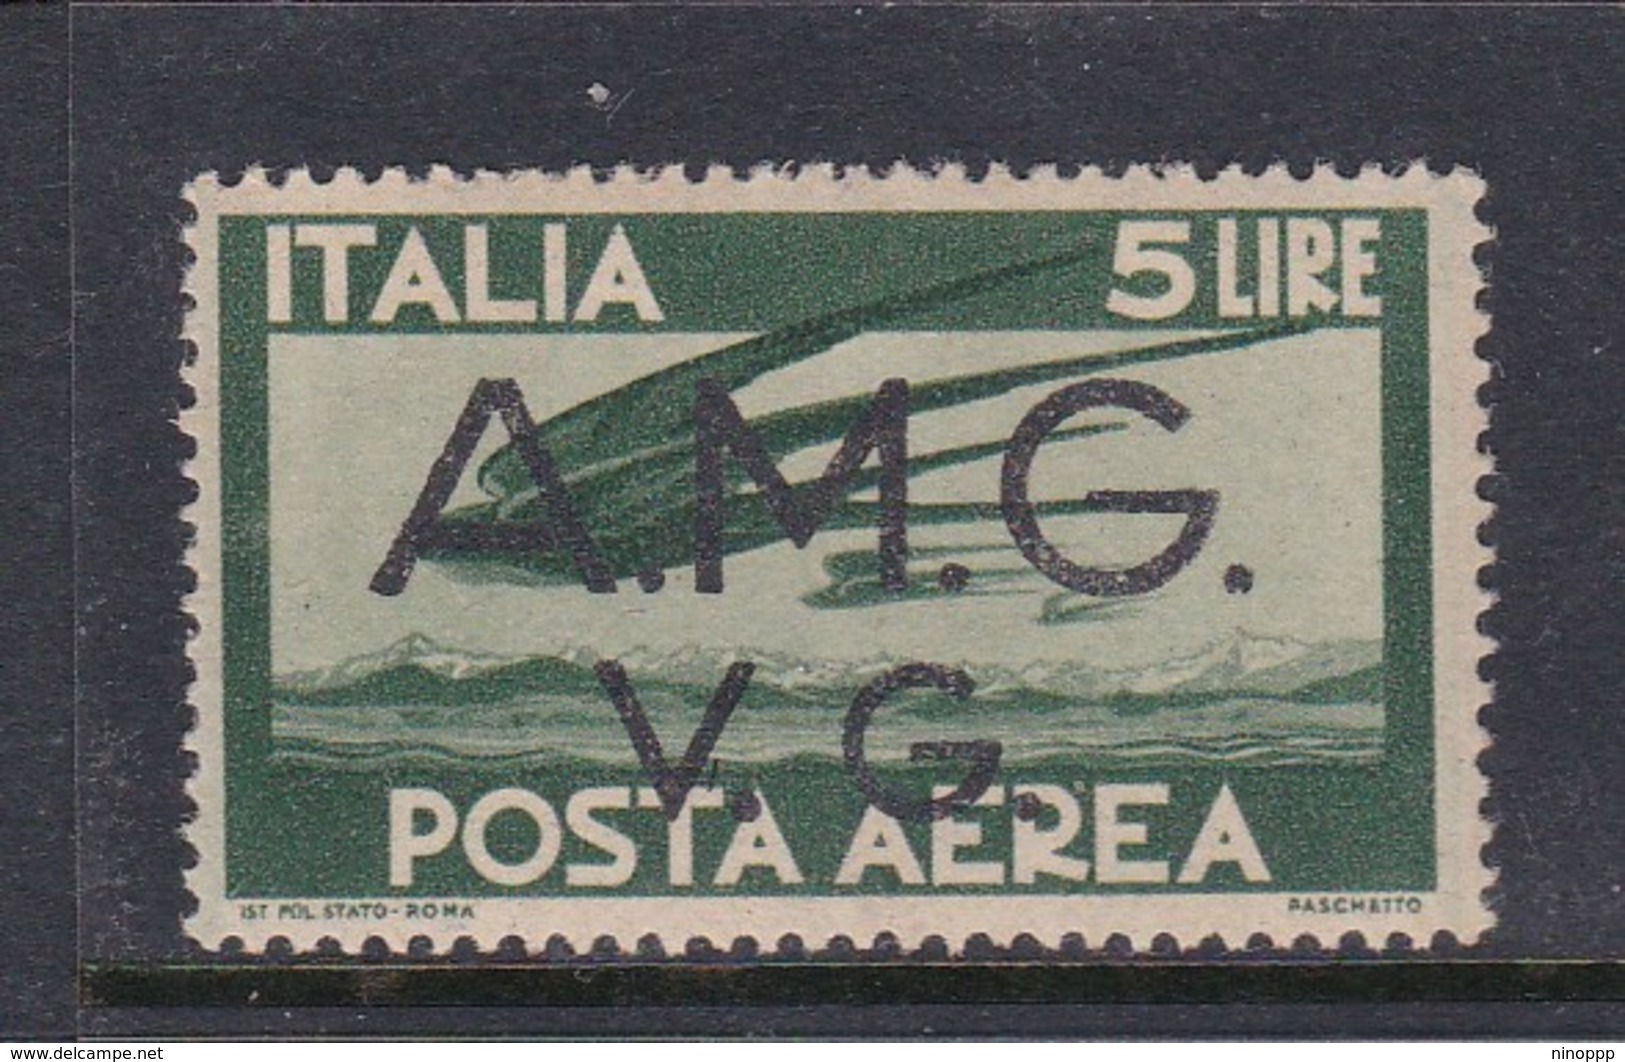 Venezia Giulia And Istria  A.M.G.V.G. Air Mail A 4 1945 Air Post 5 Lira Green Mint Never Hinged - Neufs